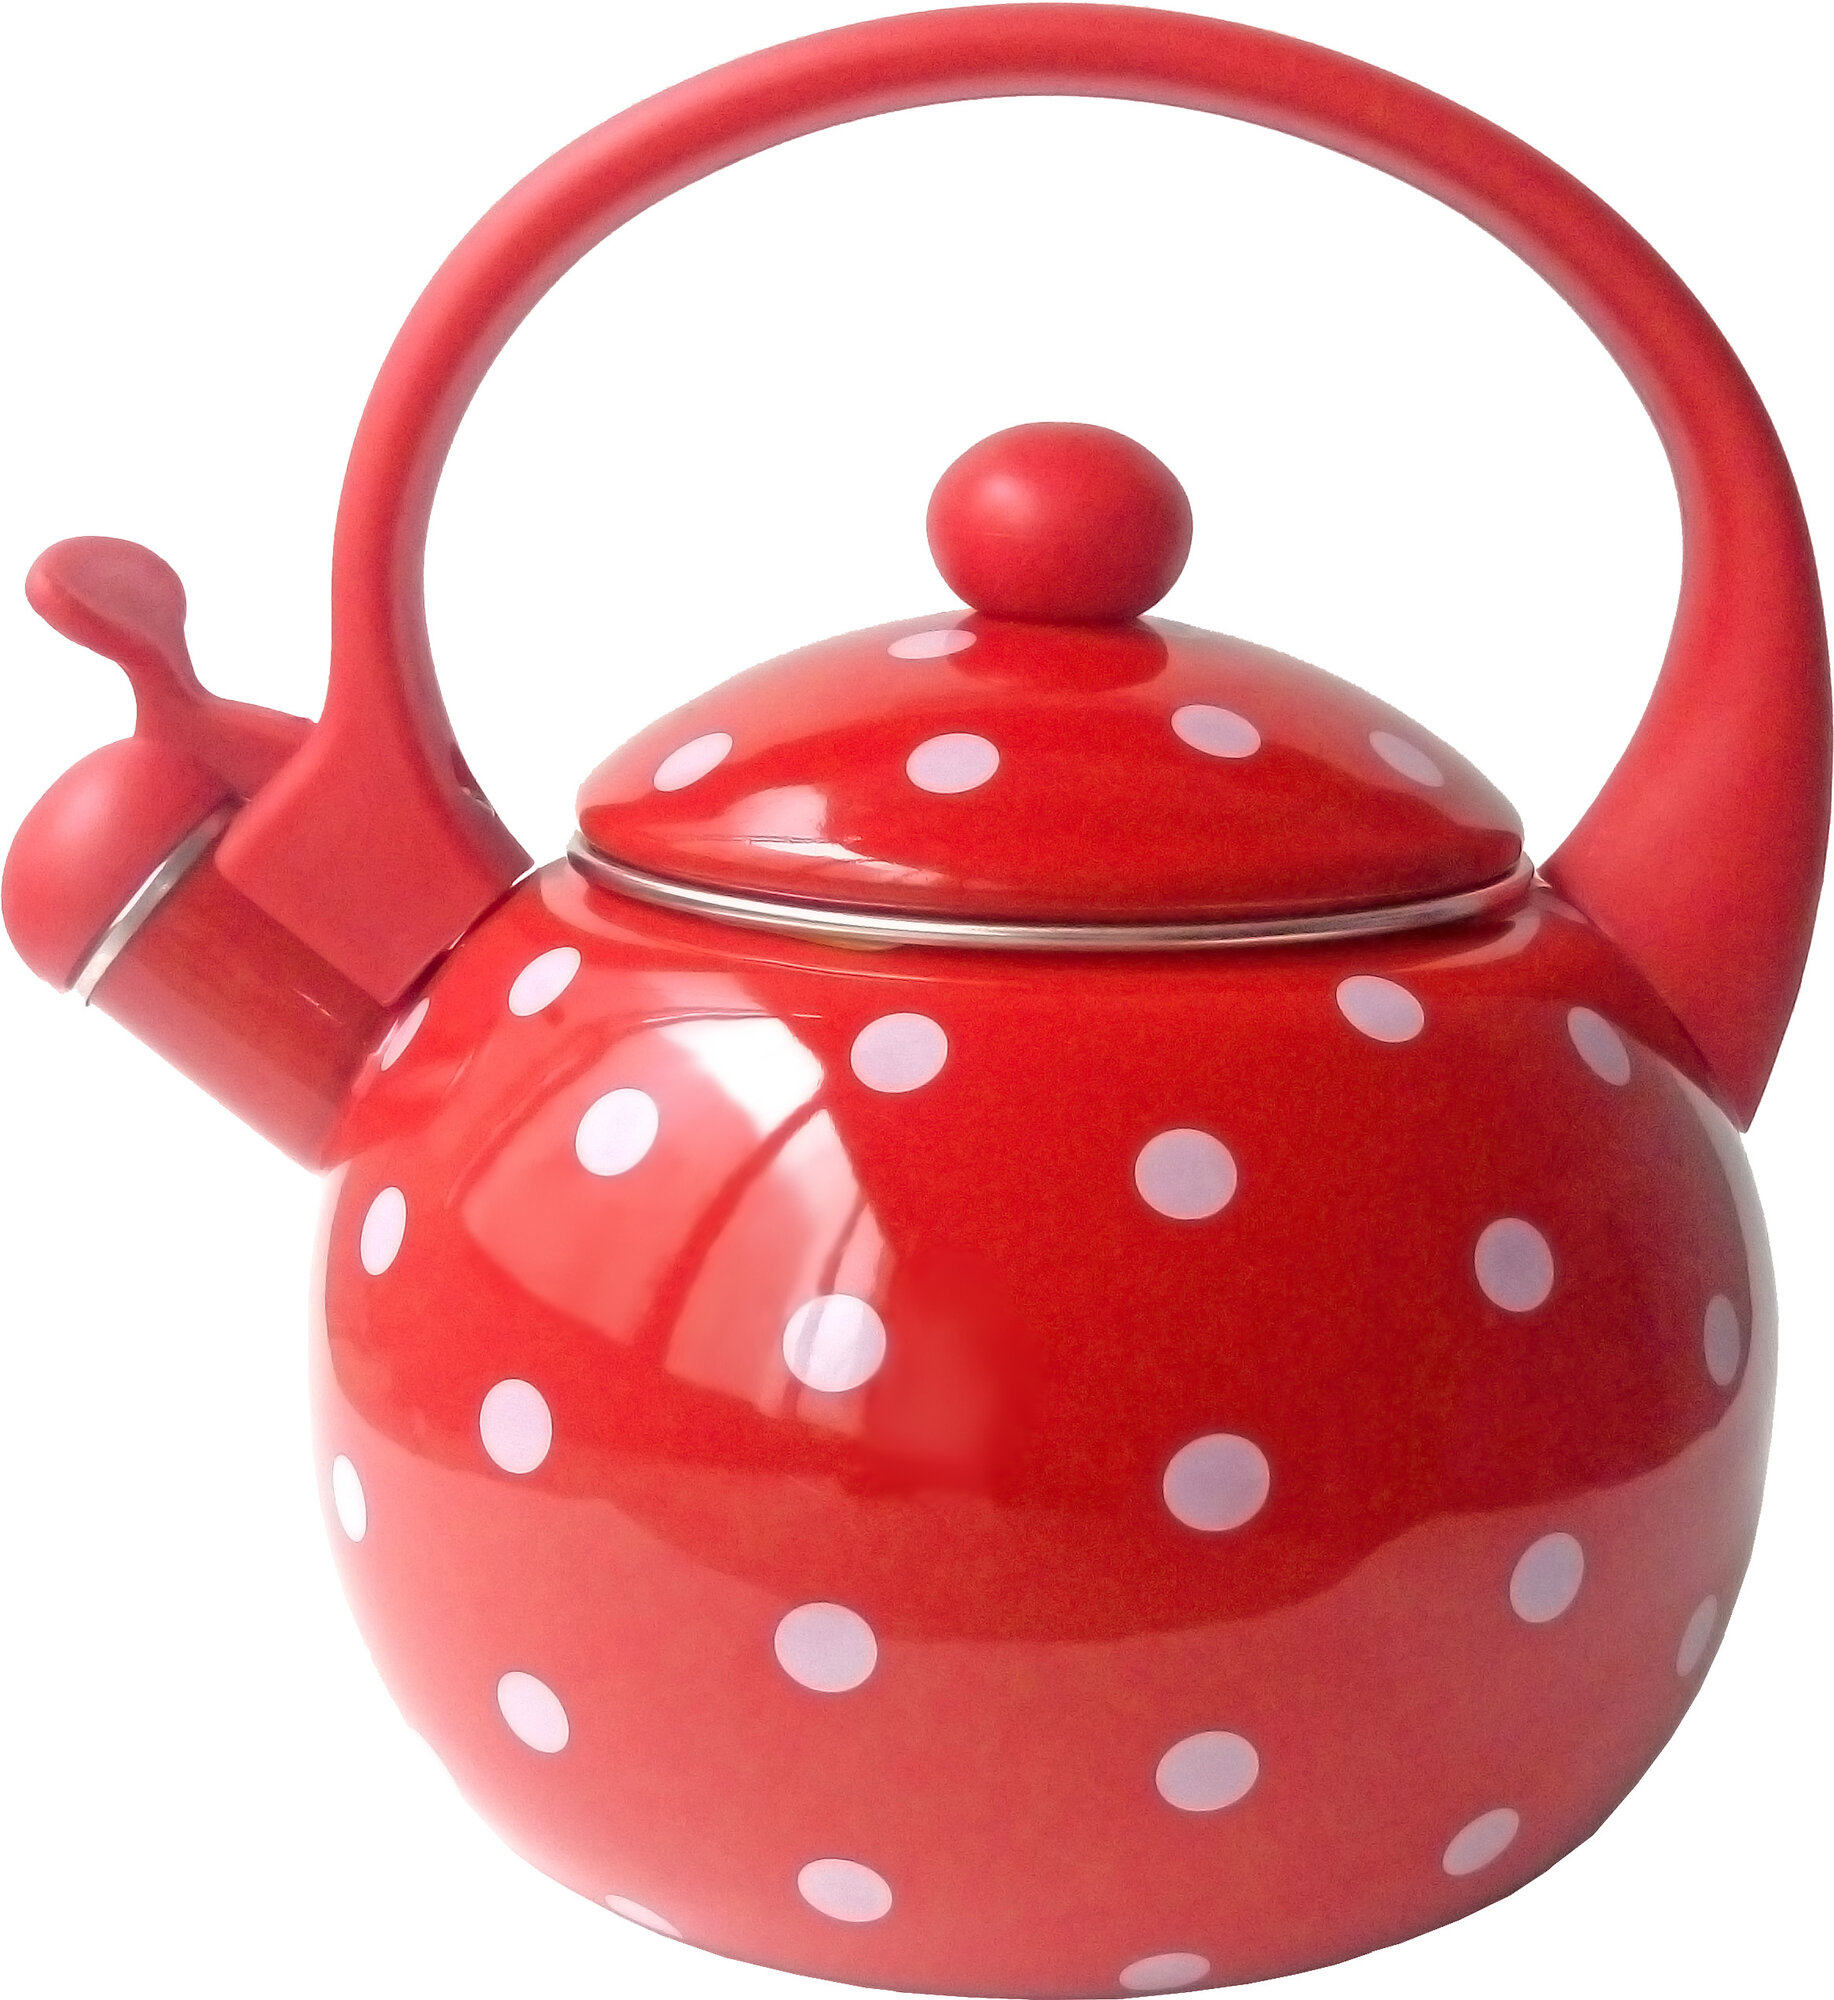 Чайник со свистком для газовой плиты эмалированный 2.5 л Kelli, индукционный, красный 2.5 литра